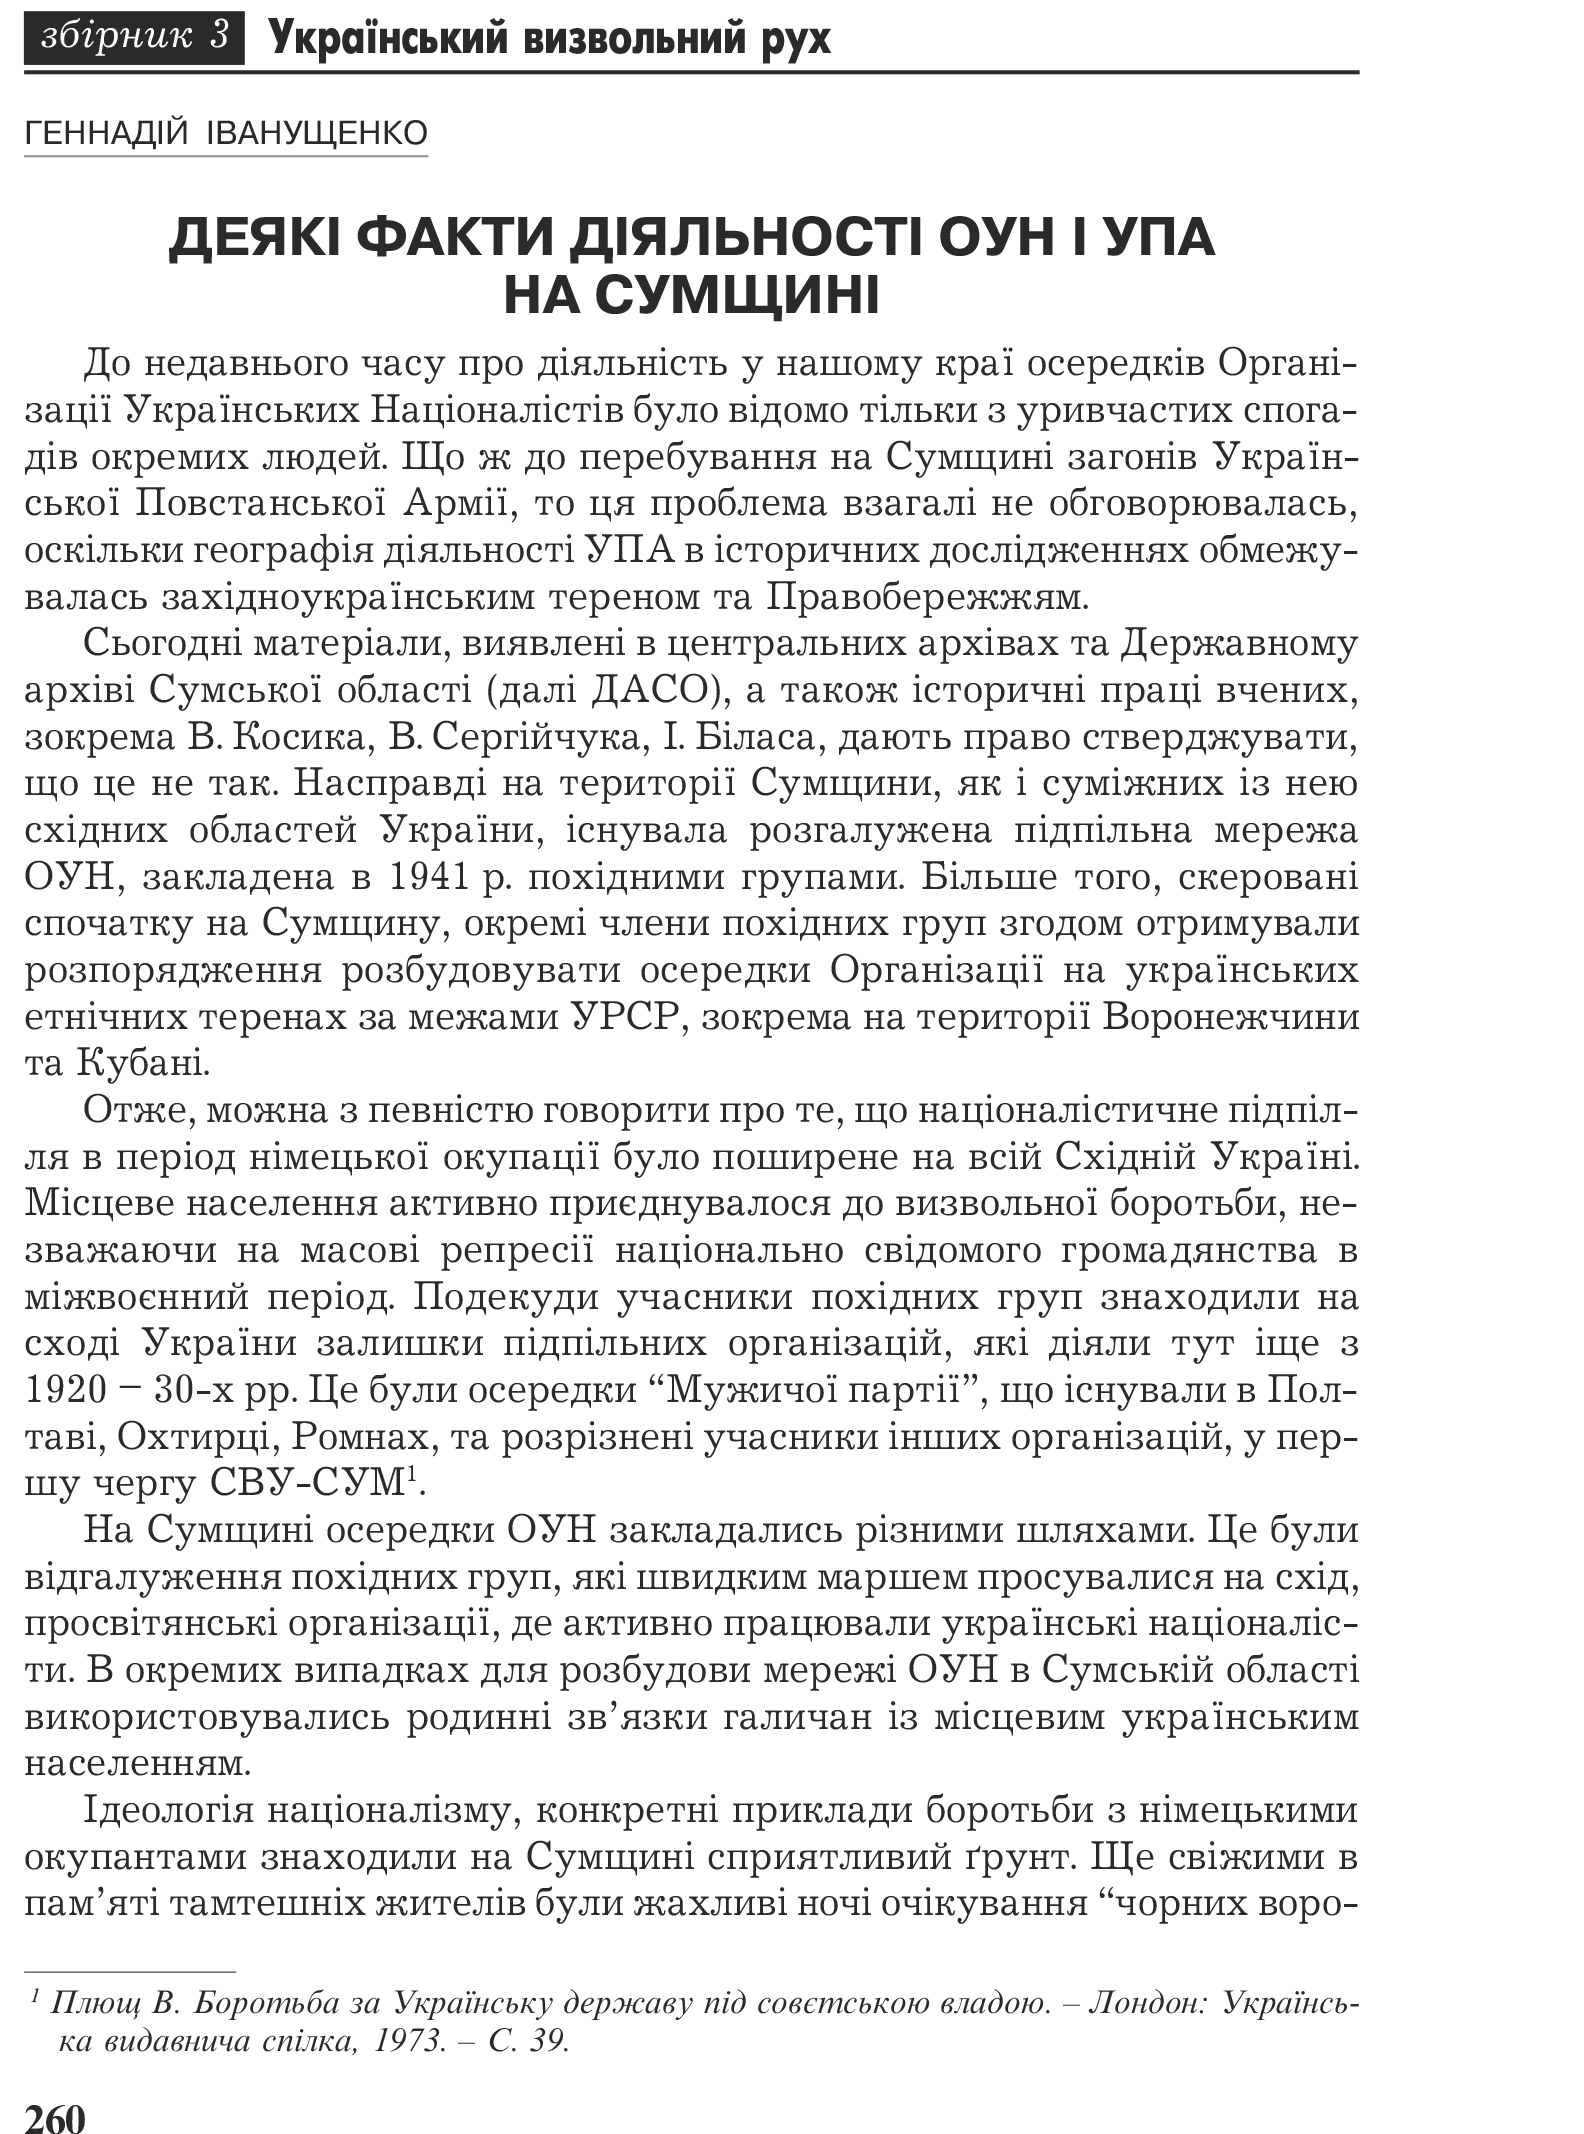 Український визвольний рух №3, ст. 260 - 272